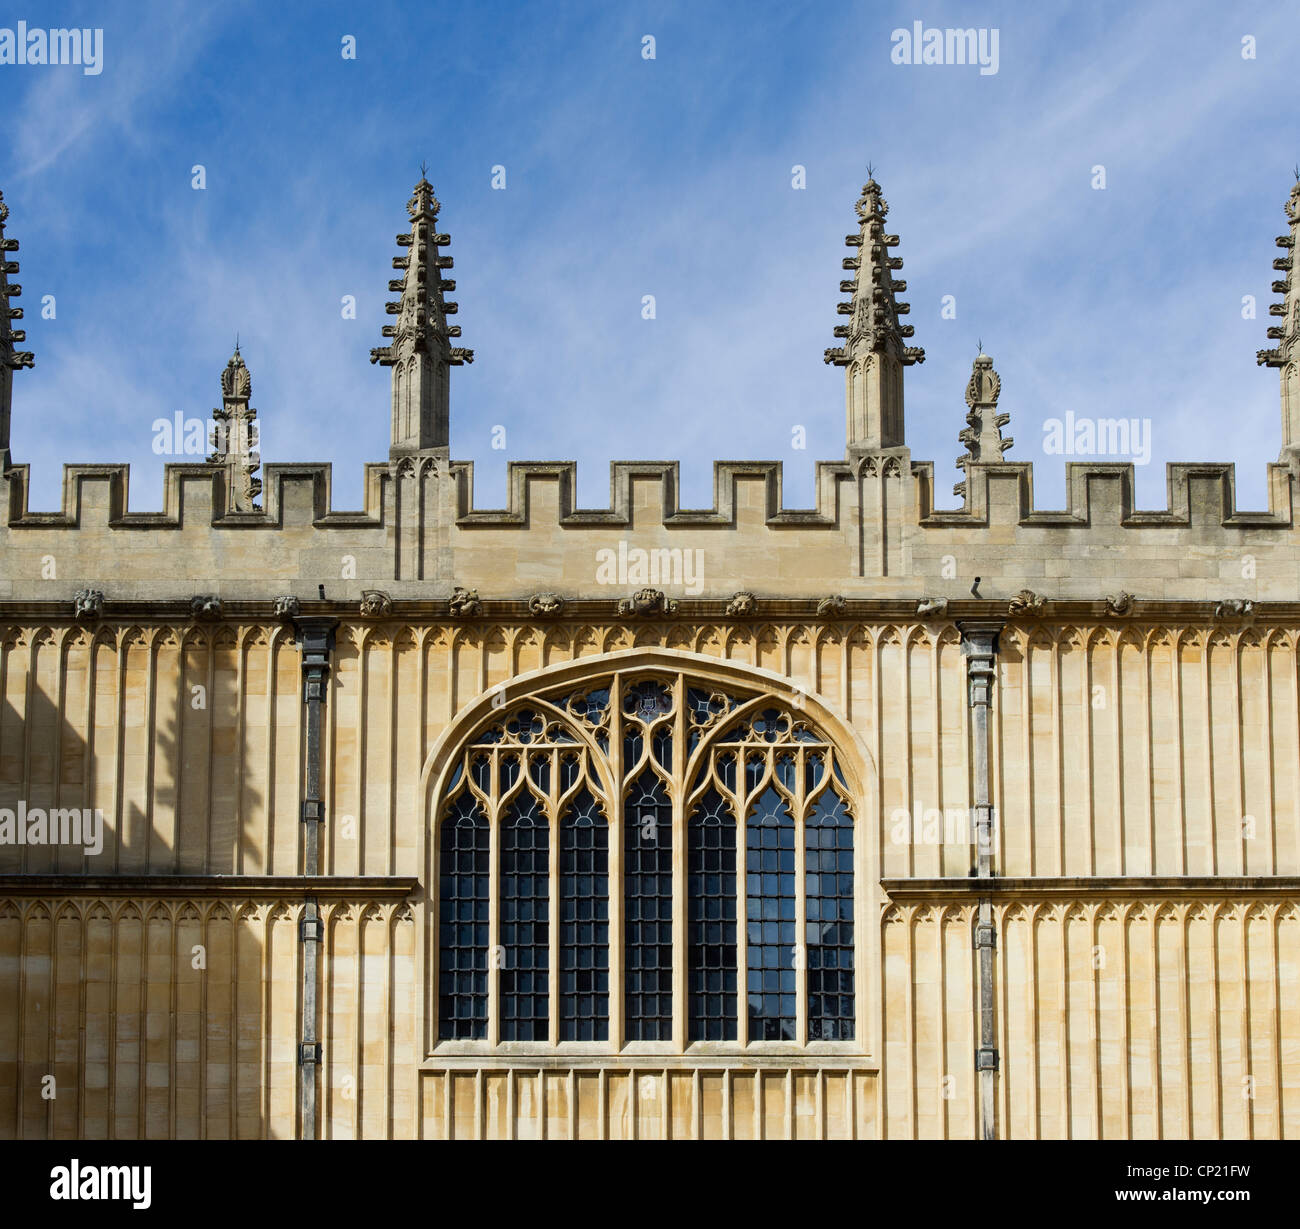 L'architecture du bâtiment dans les écoles Quadrangle, Bodleian Library, Oxford Angleterre Banque D'Images